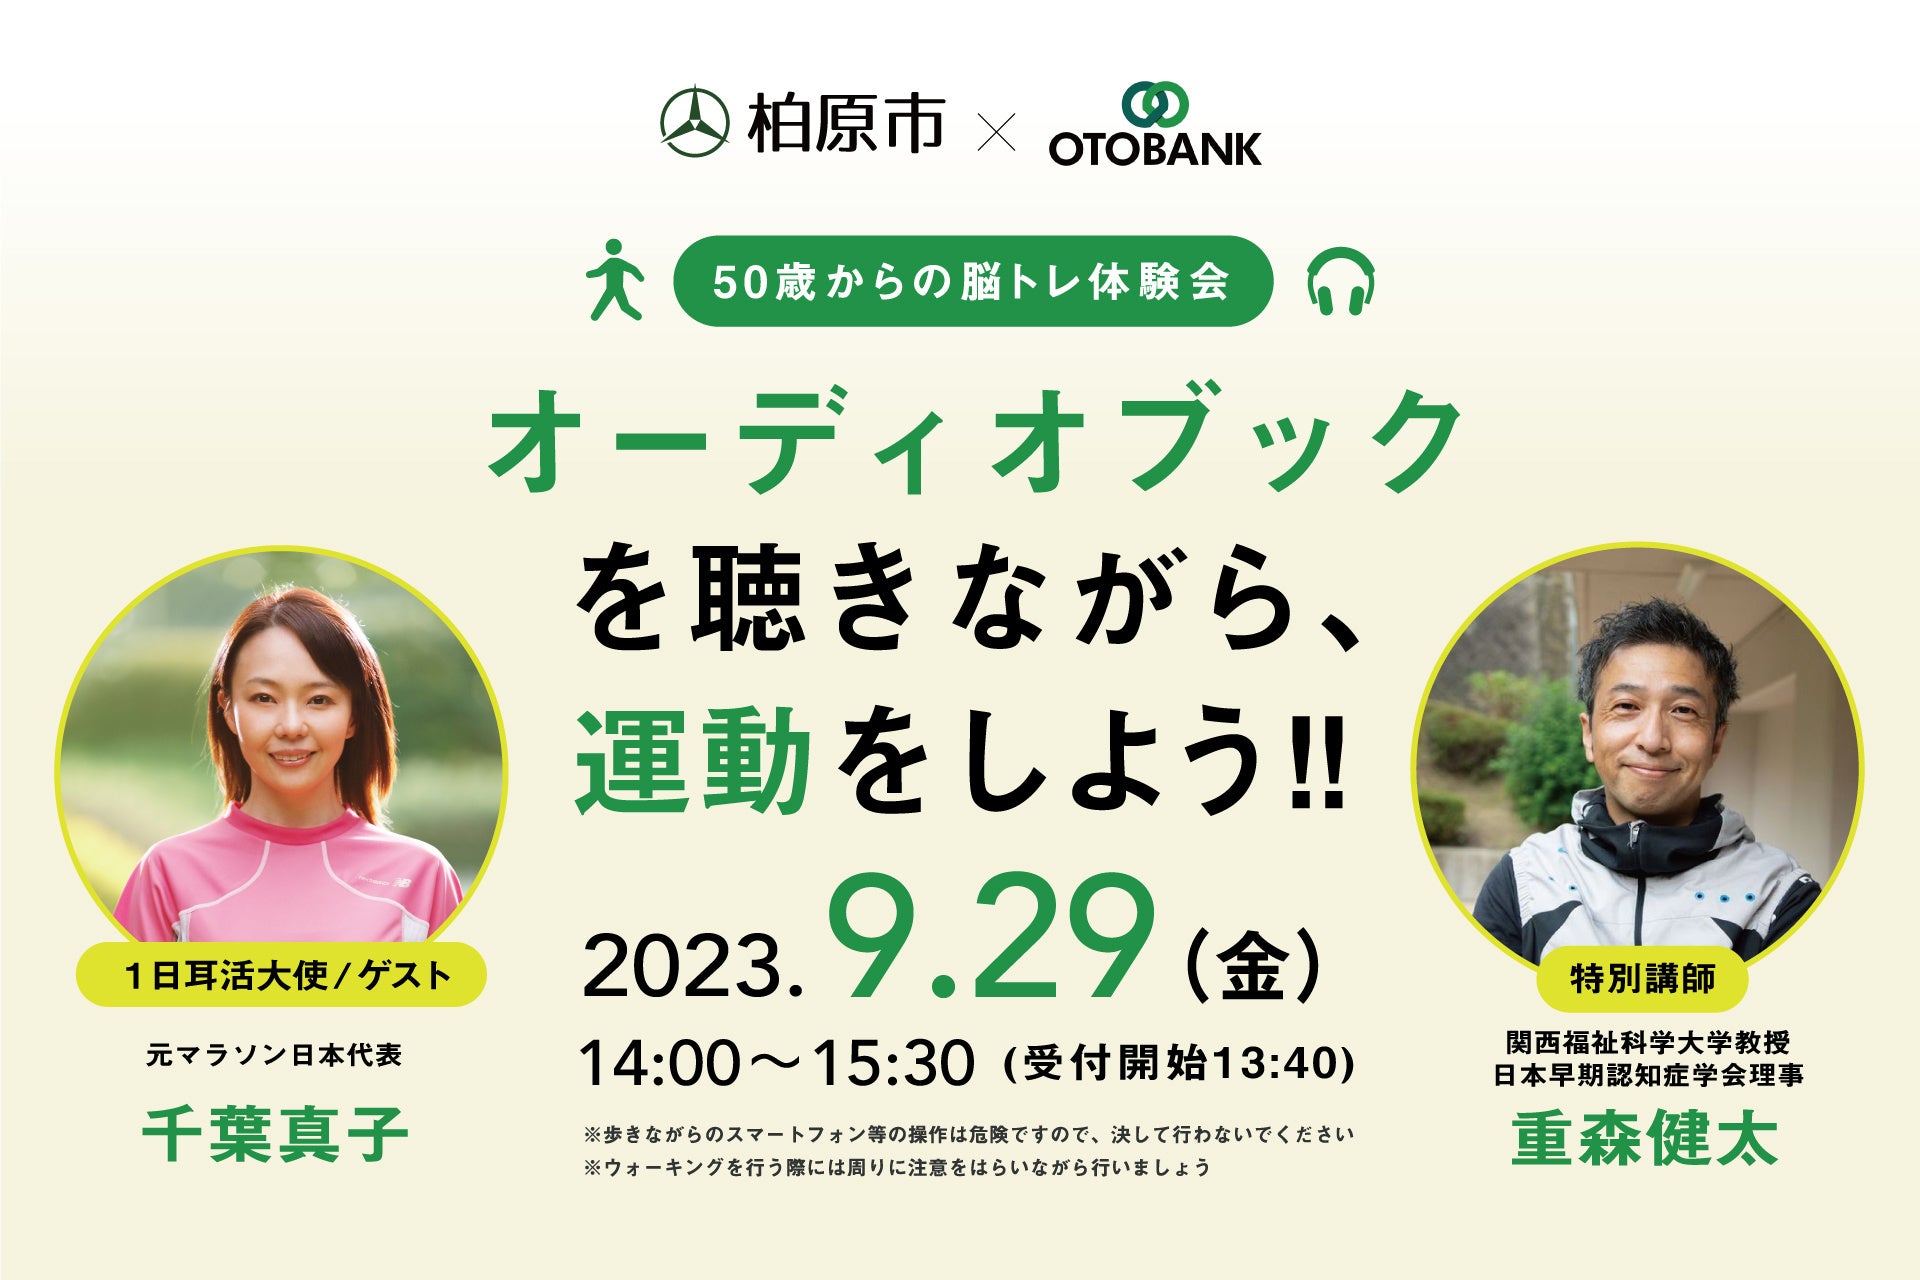 【読書&スポーツの秋】大阪府柏原市とオトバンクが、オーディオブックを活用した健康イベントを9月29日(金)に初開催